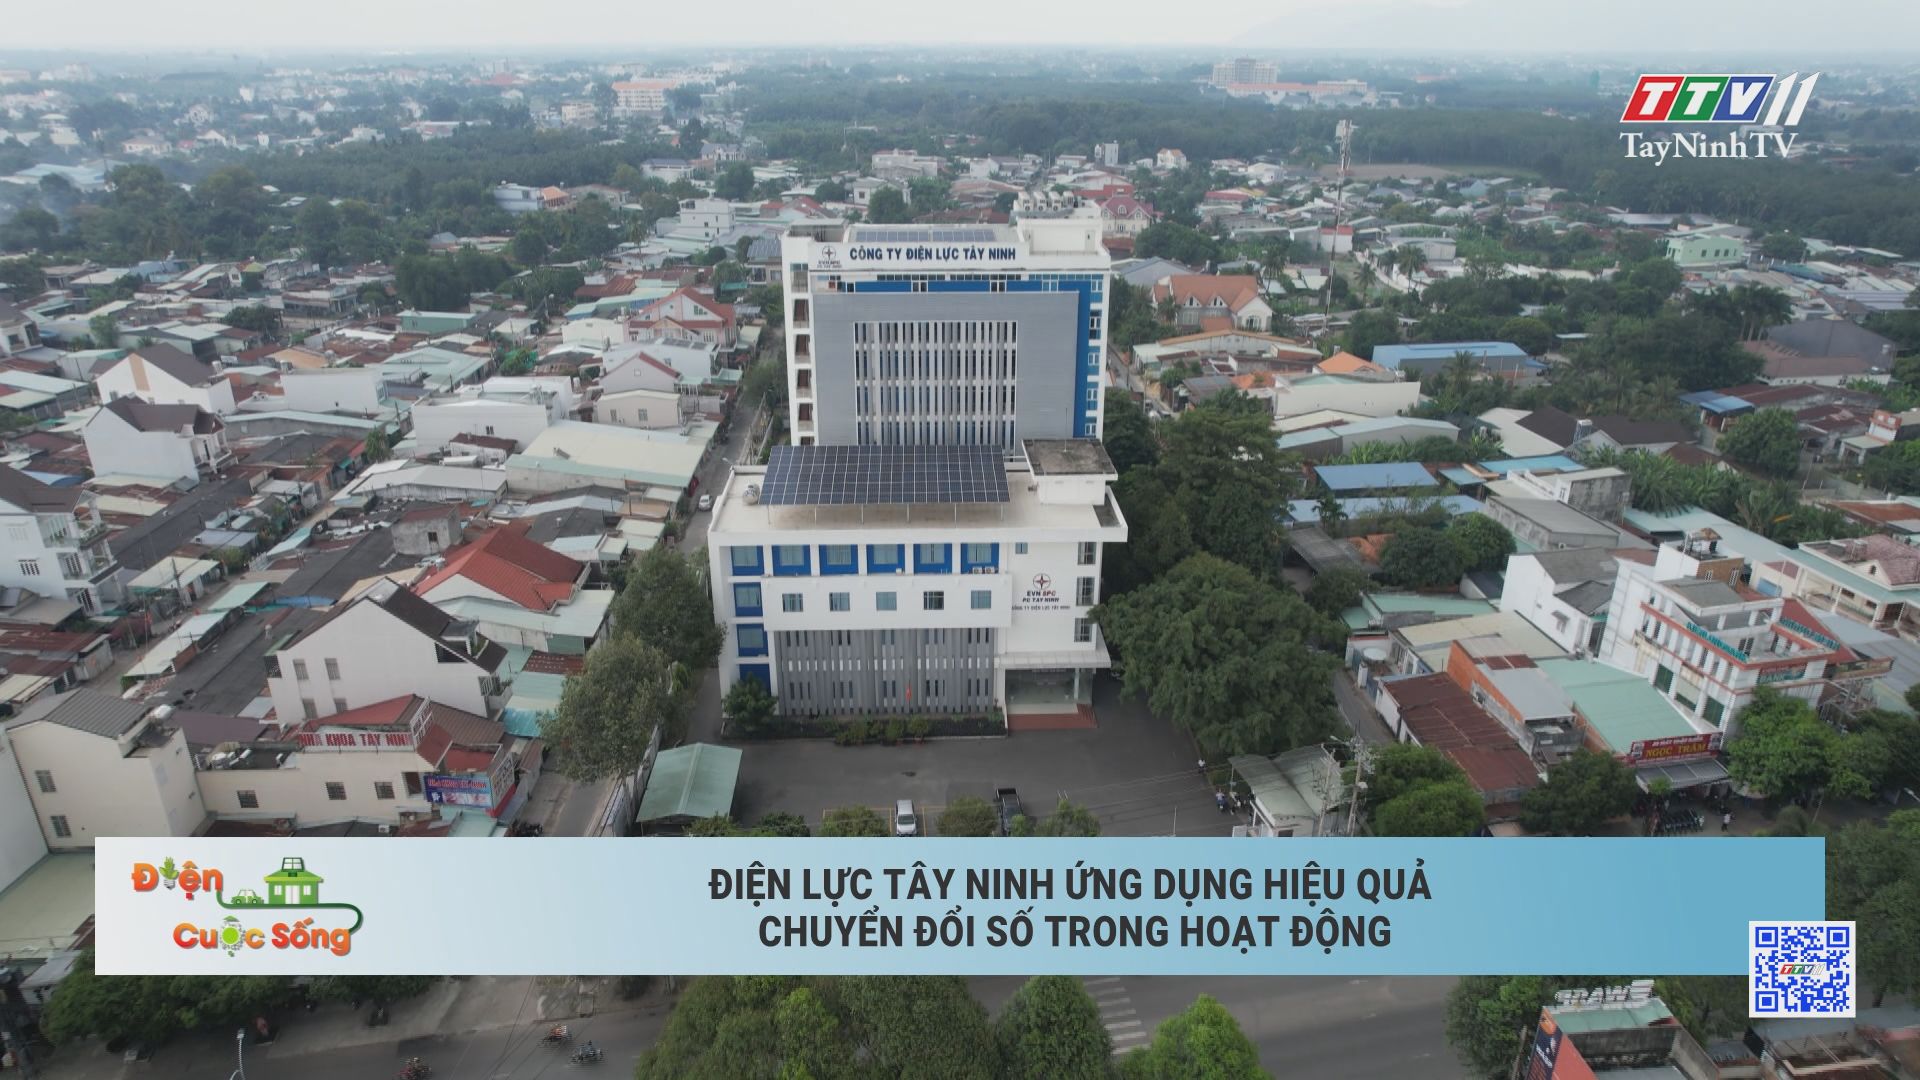 Điện lực Tây Ninh ứng dụng hiệu quả chuyển đổi số trong hoạt động | ĐIỆN VÀ CUỘC SỐNG | TayNinhTV